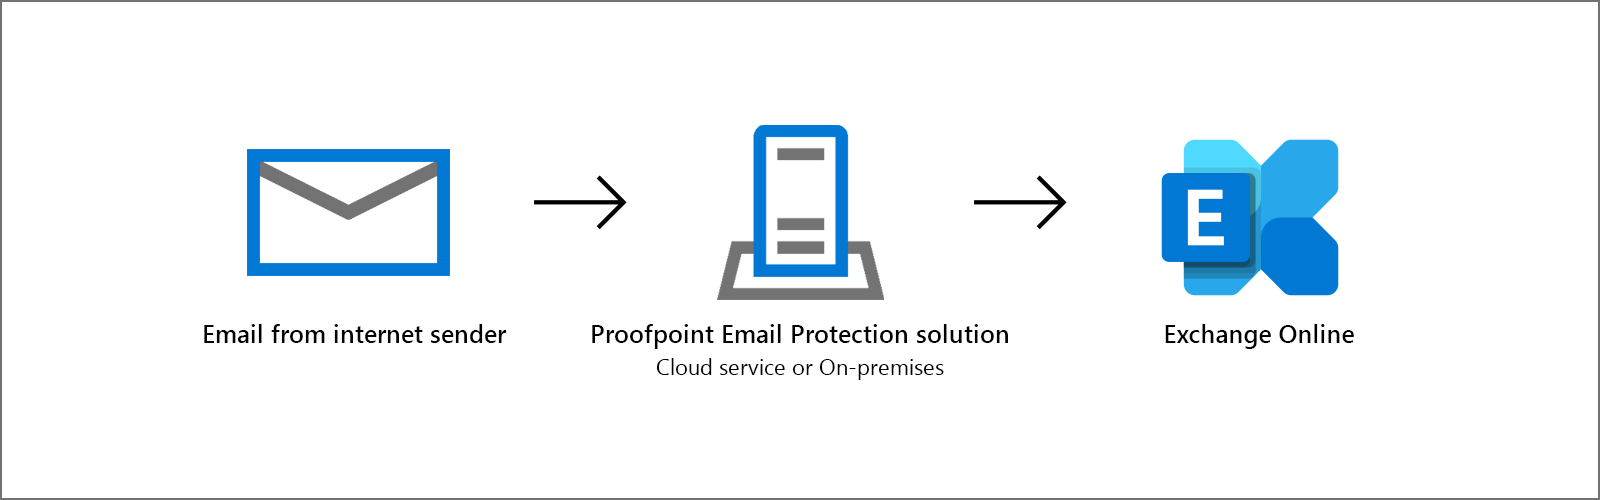 使用 Proofpoint 和 Exchange Online 進行電子郵件篩選的熱門設定。